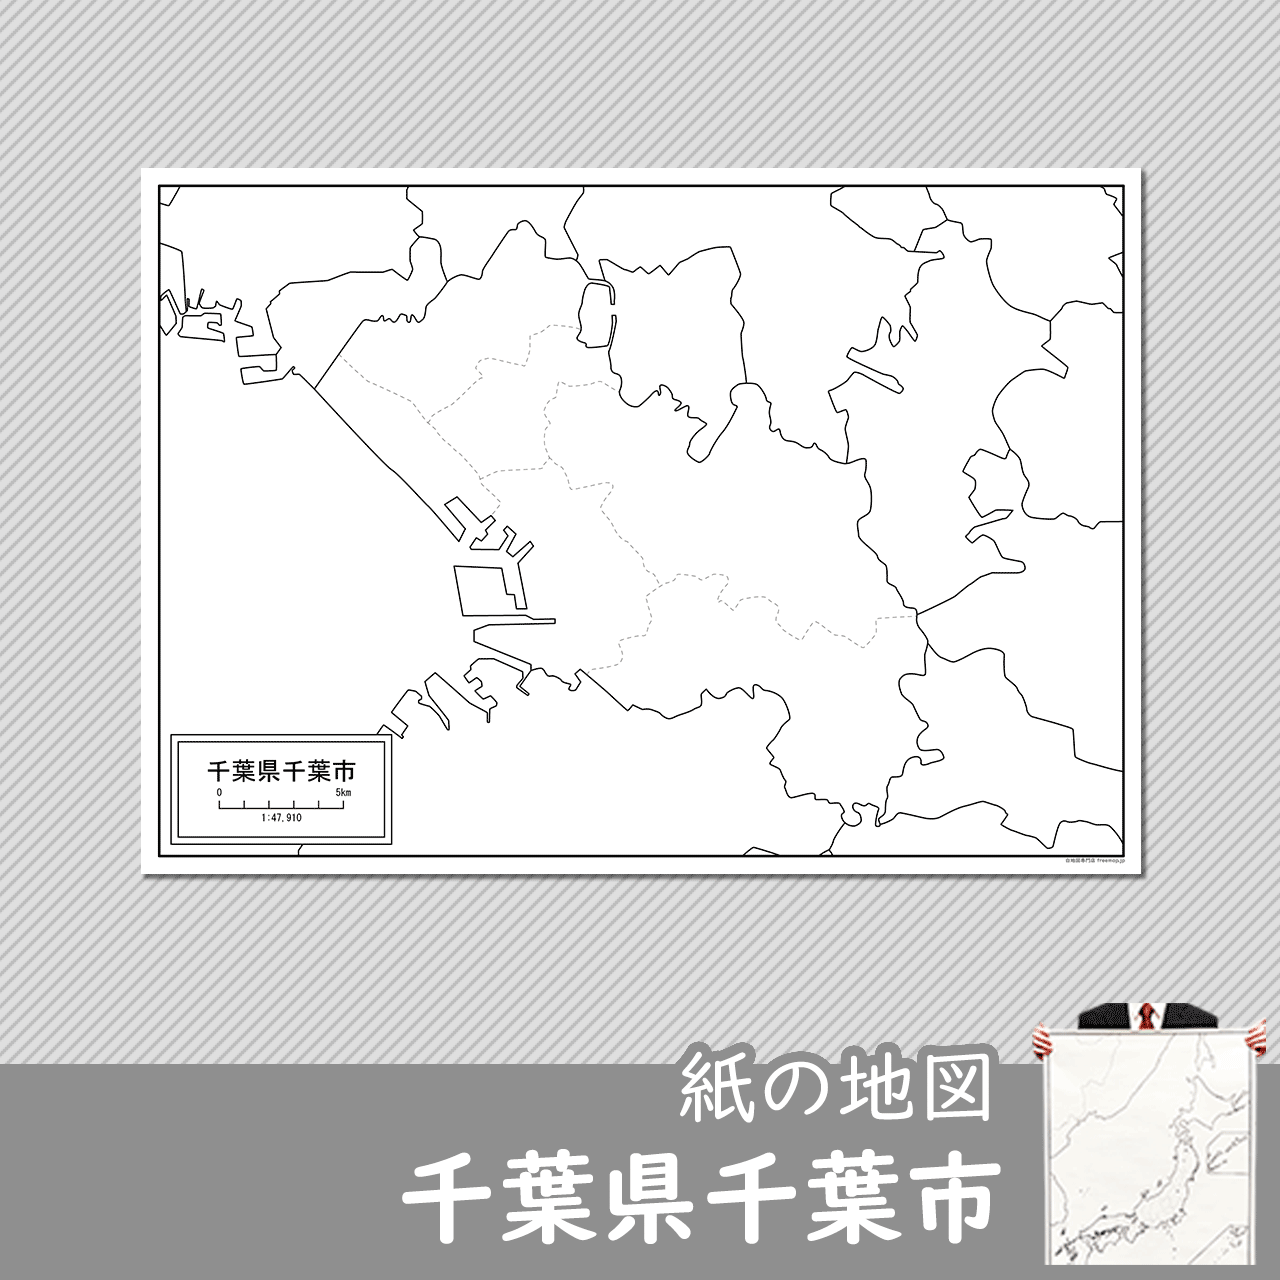 千葉県千葉市の紙の白地図のサムネイル